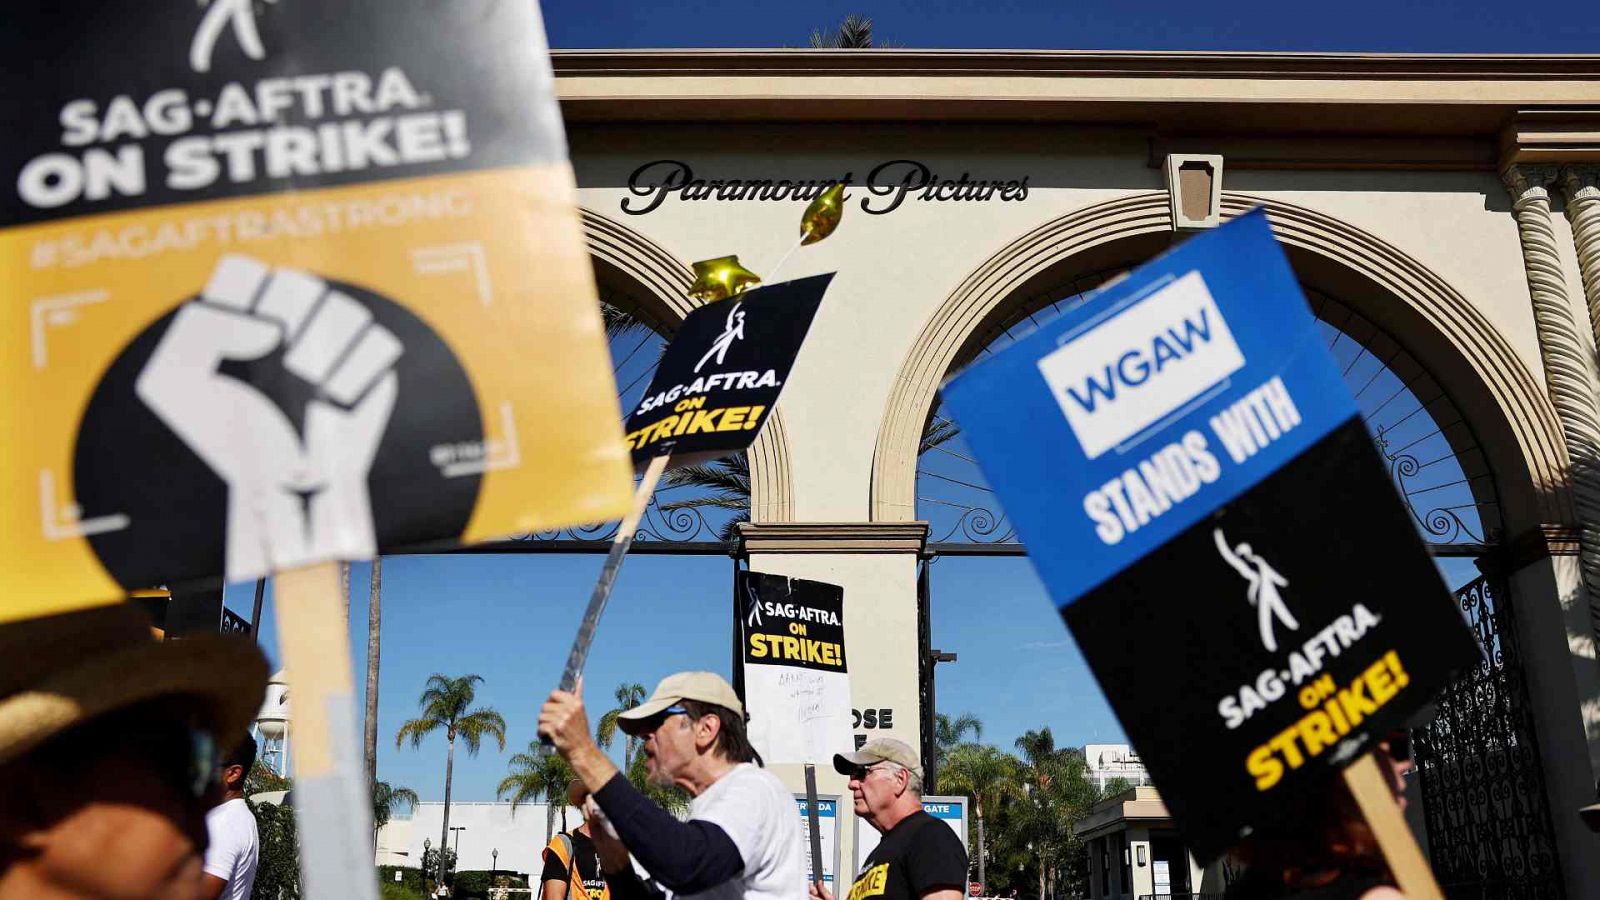 Miembros de SAG-AFTRA forman un piquete frente a los estudios Paramount en su huelga contra Hollywood en Los Ángeles, California.